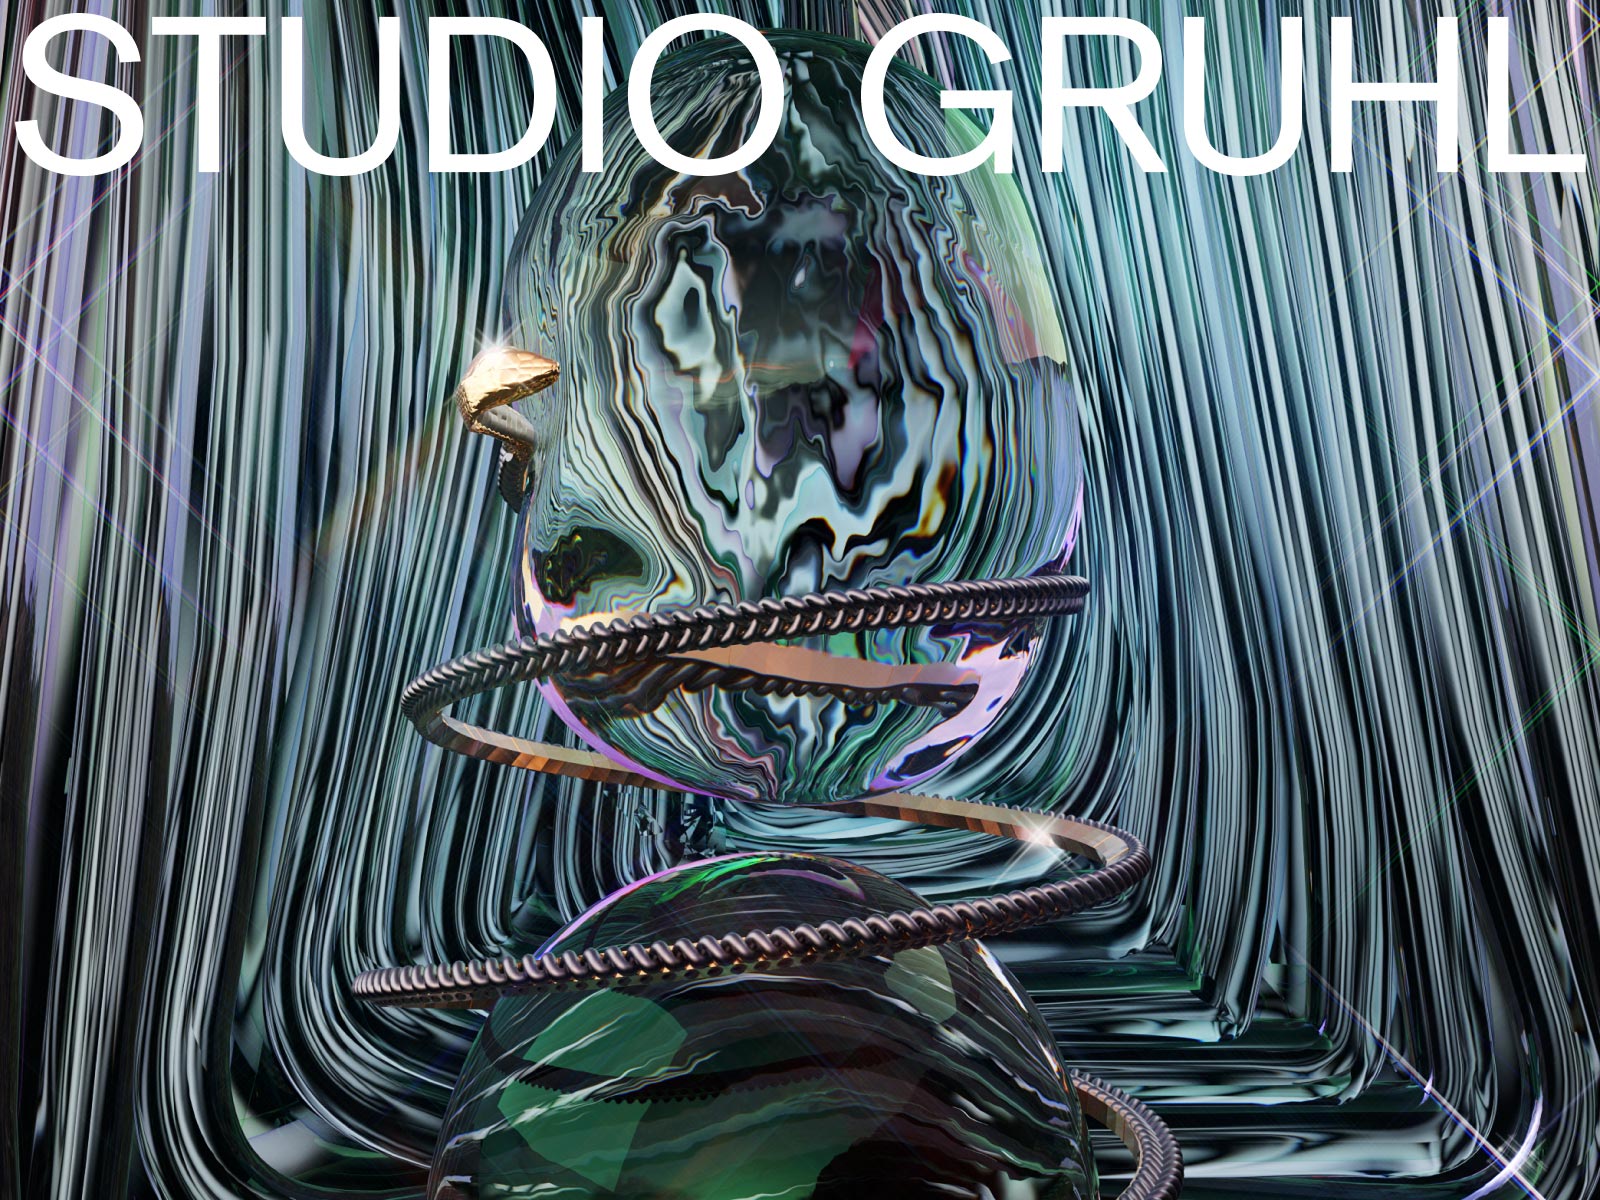 StudioGruhl